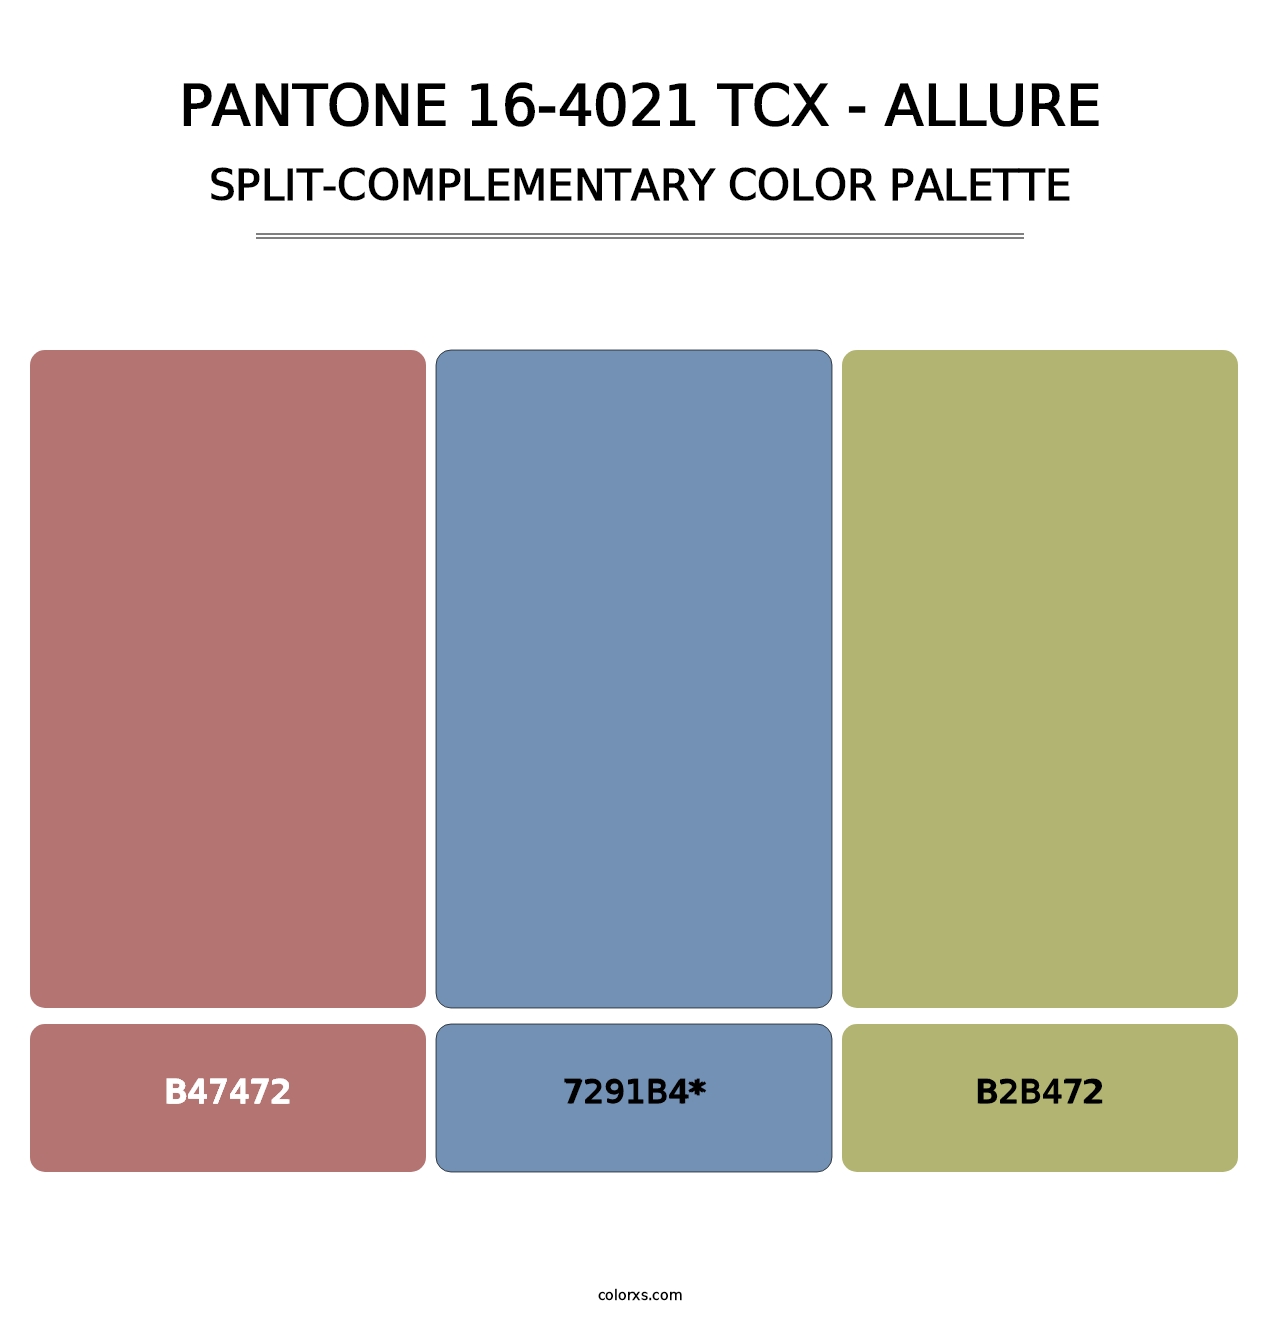 PANTONE 16-4021 TCX - Allure - Split-Complementary Color Palette